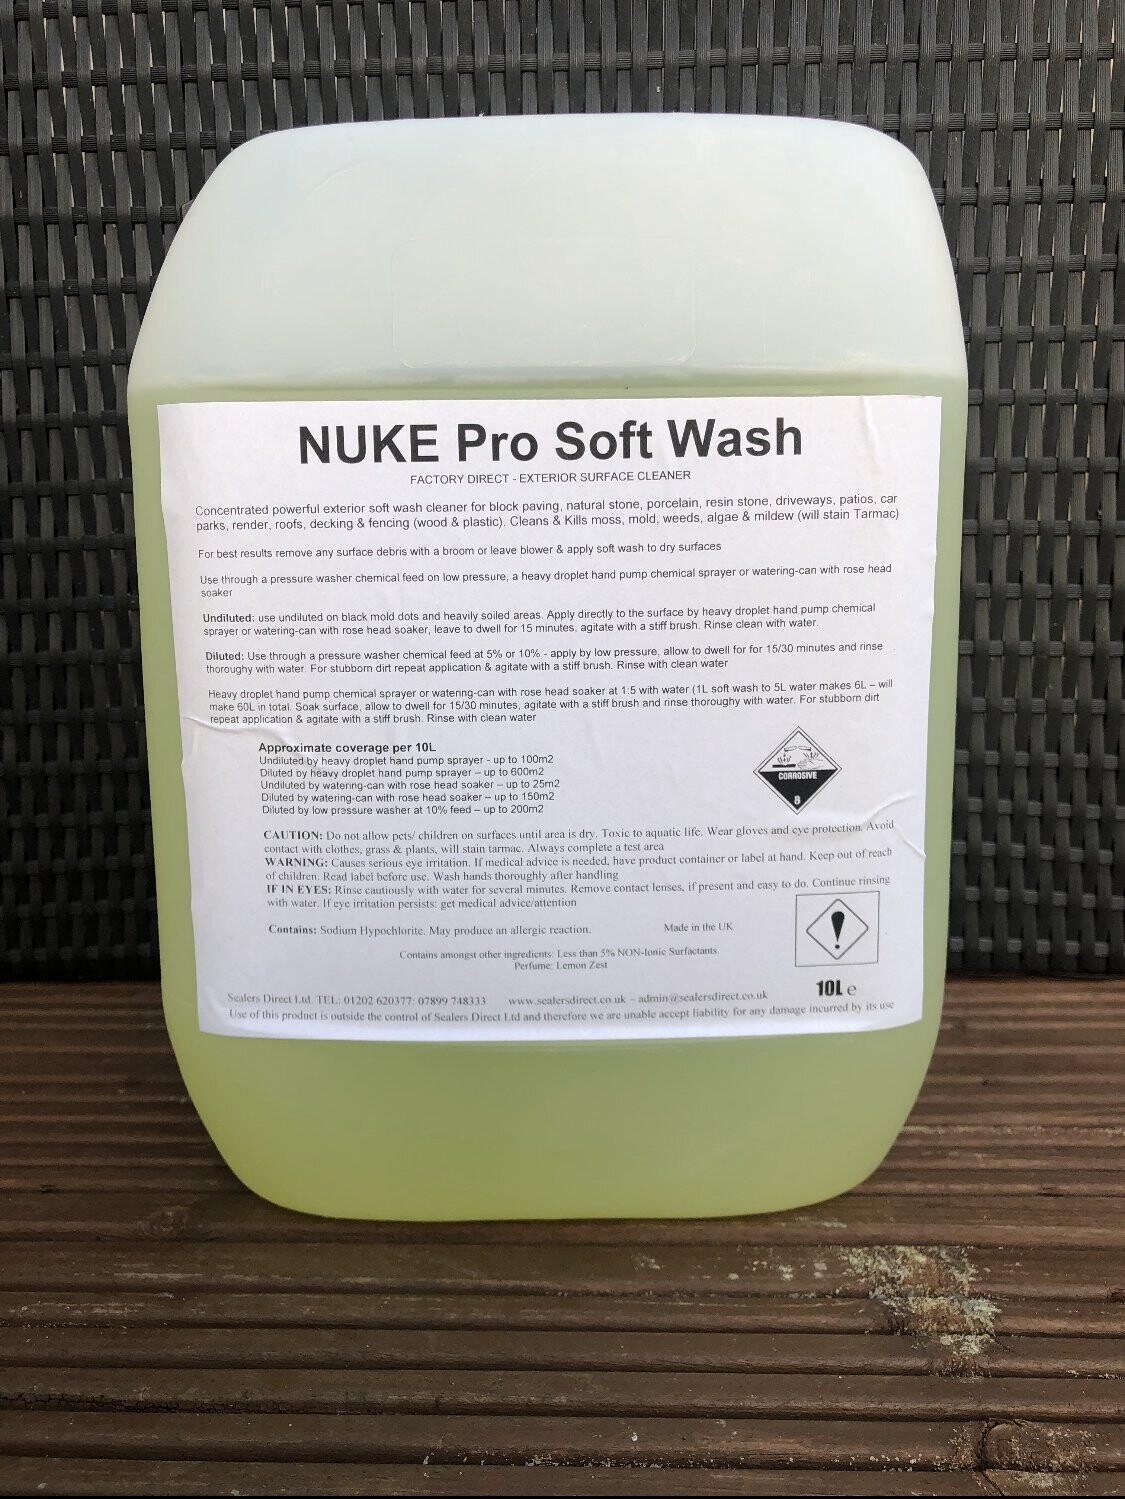 NUKE Pro - Soft Wash (Lemon) on offer Buy 1 get 1 FREE